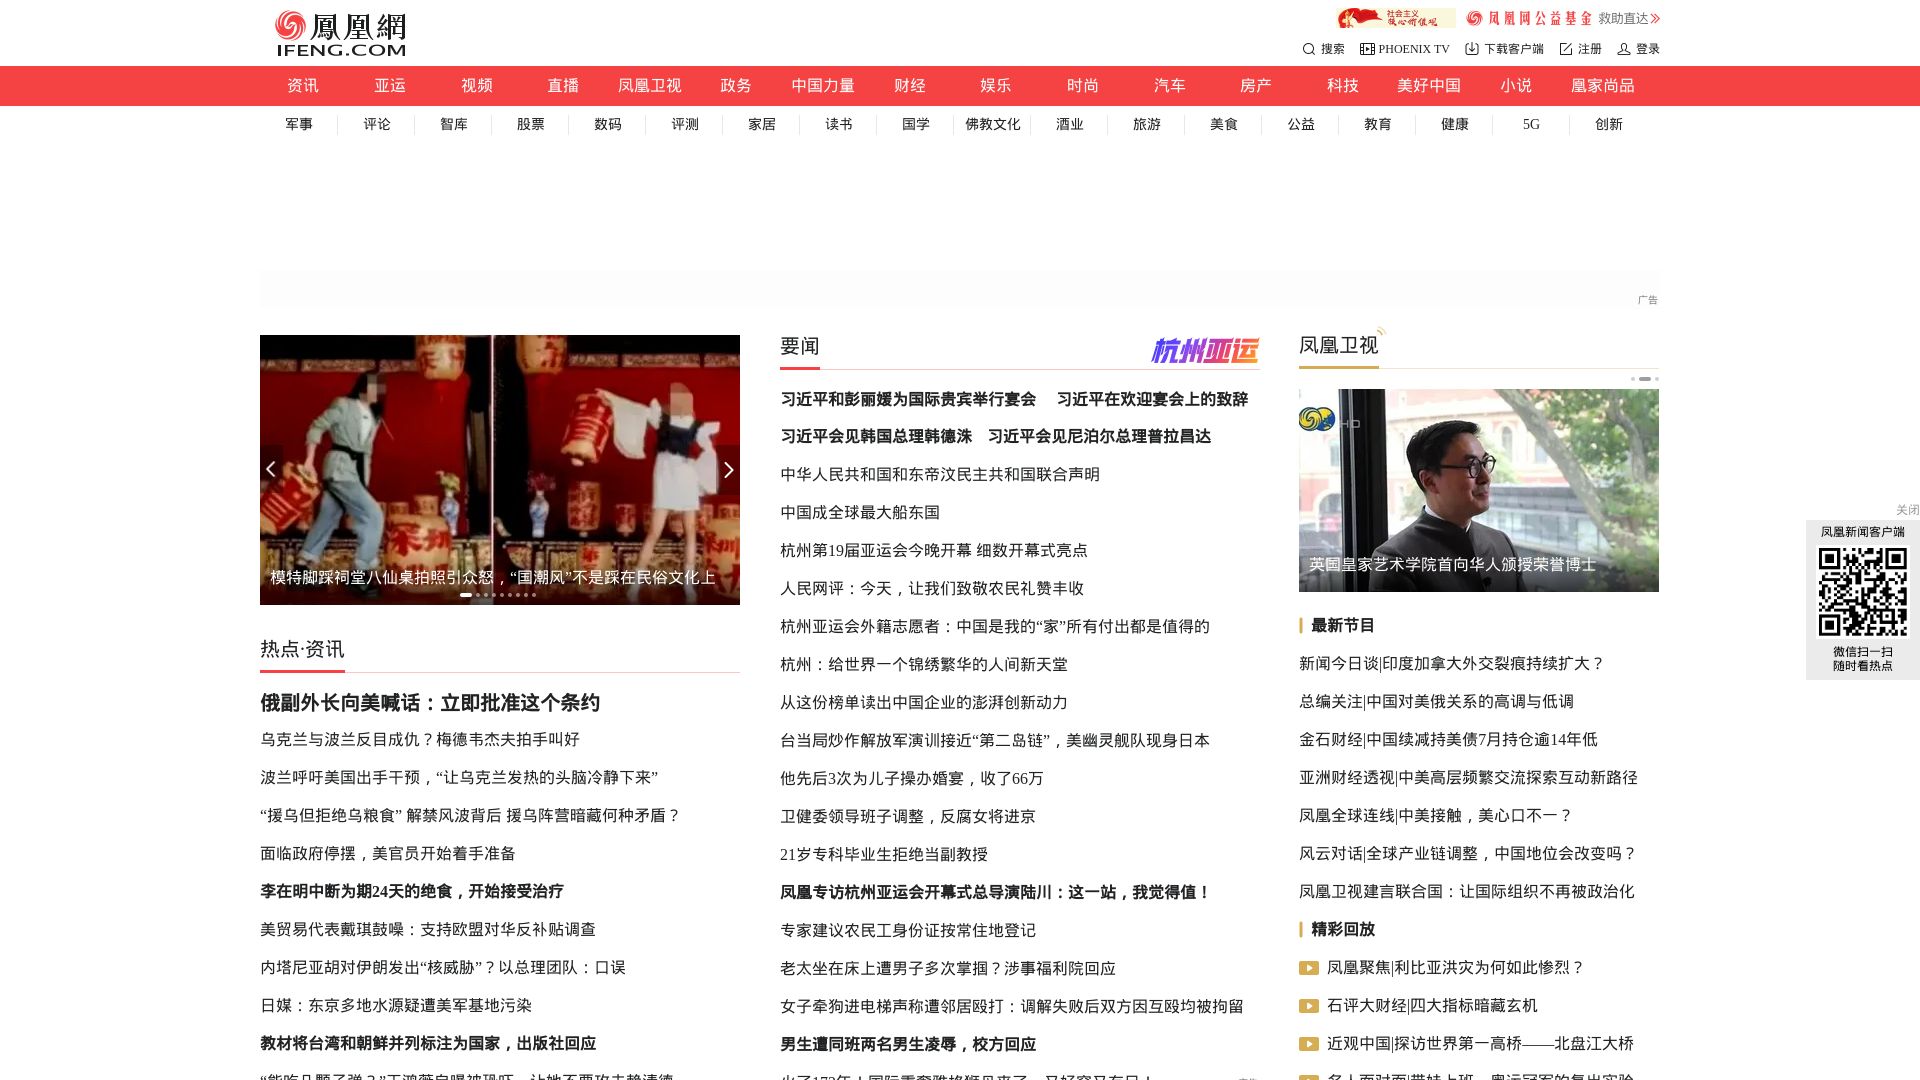 网站状态 ifeng.com 是  在线的